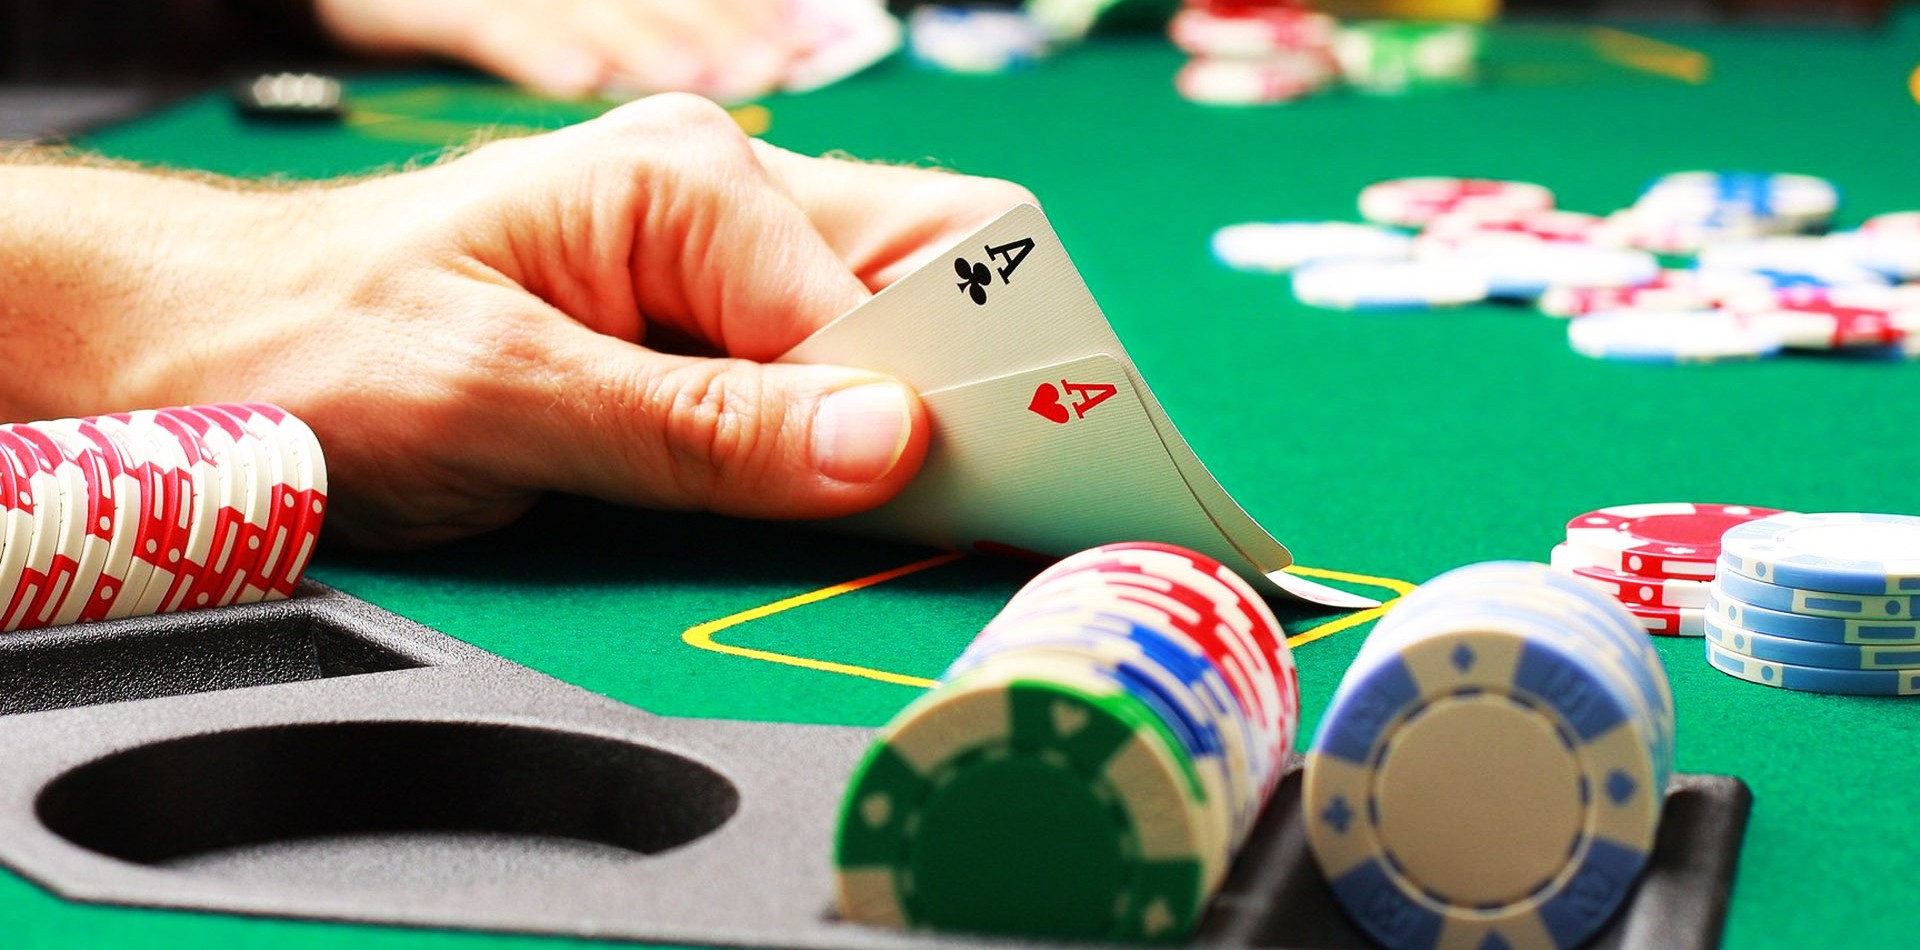 Hướng dẫn cách chơi Poker hiệu quả từ A - Z cho người chơi